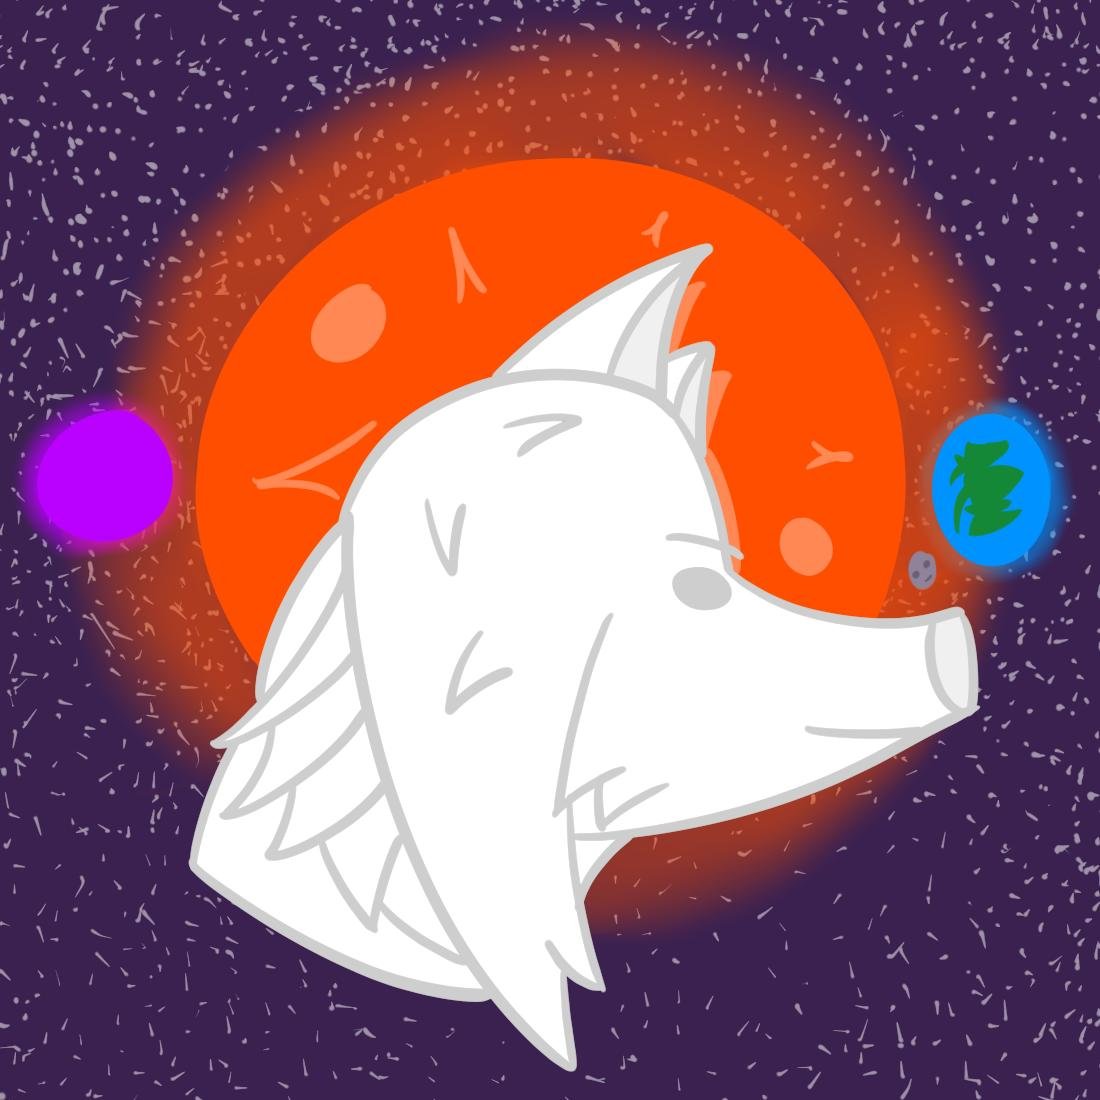 Solarwolf64